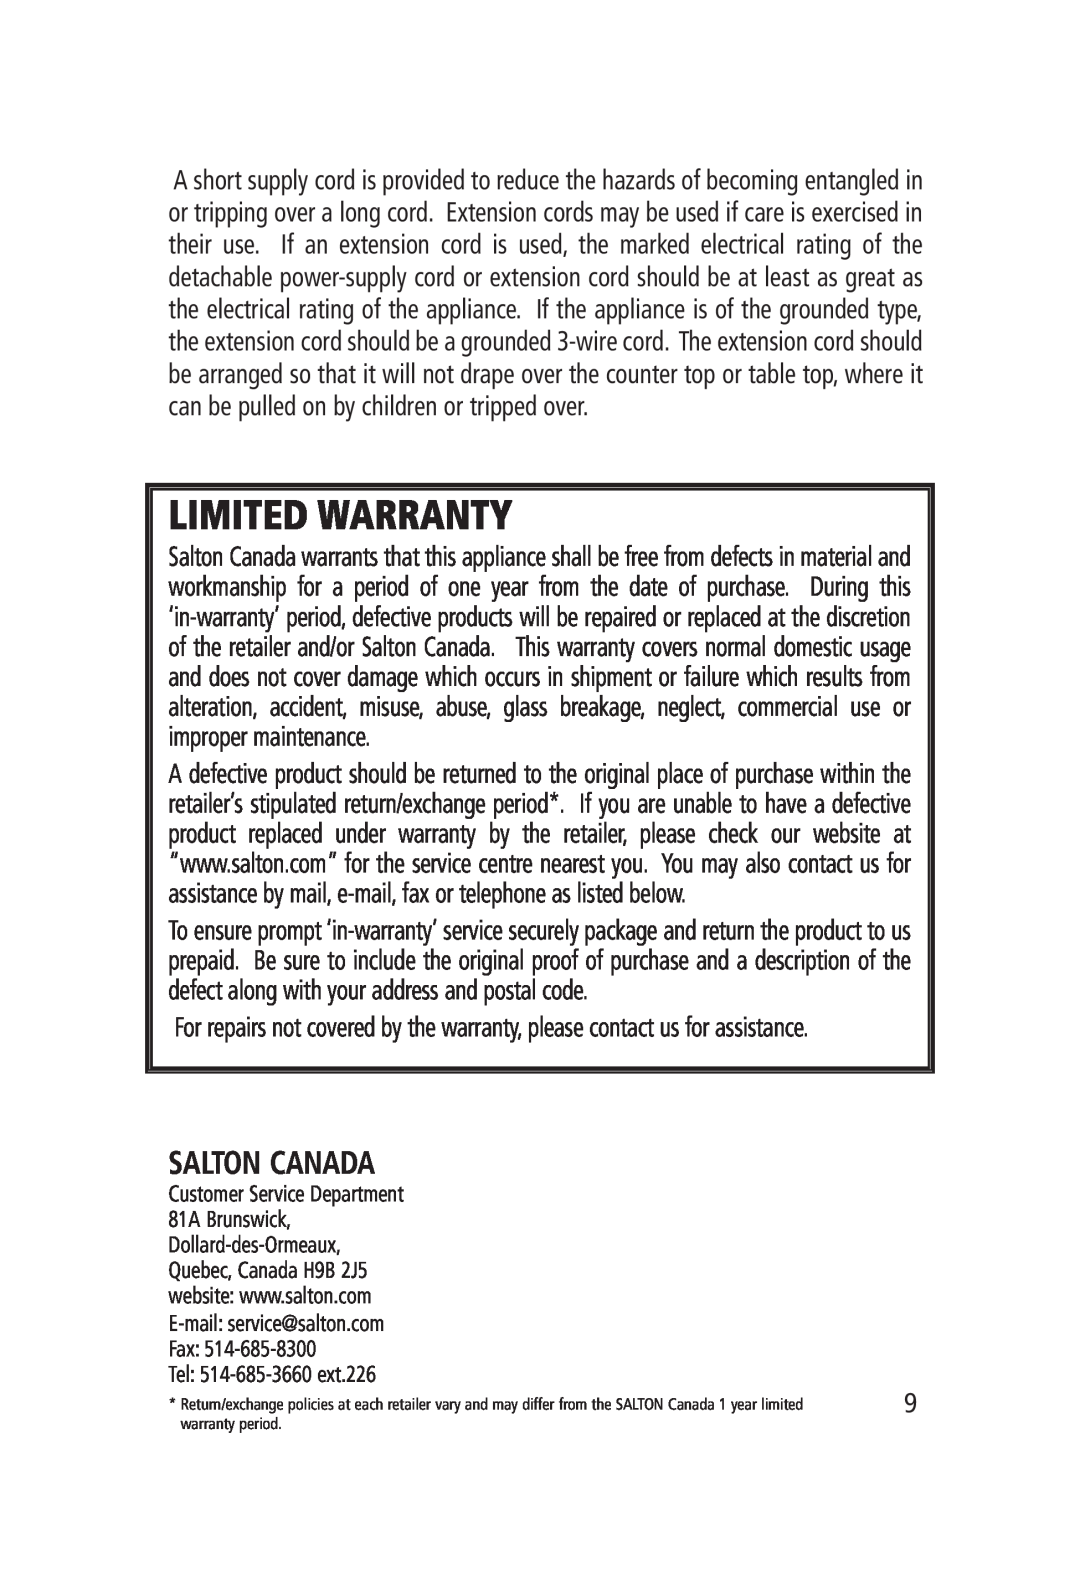 Salton WM-1186 manual Salton Canada, Limited Warranty 